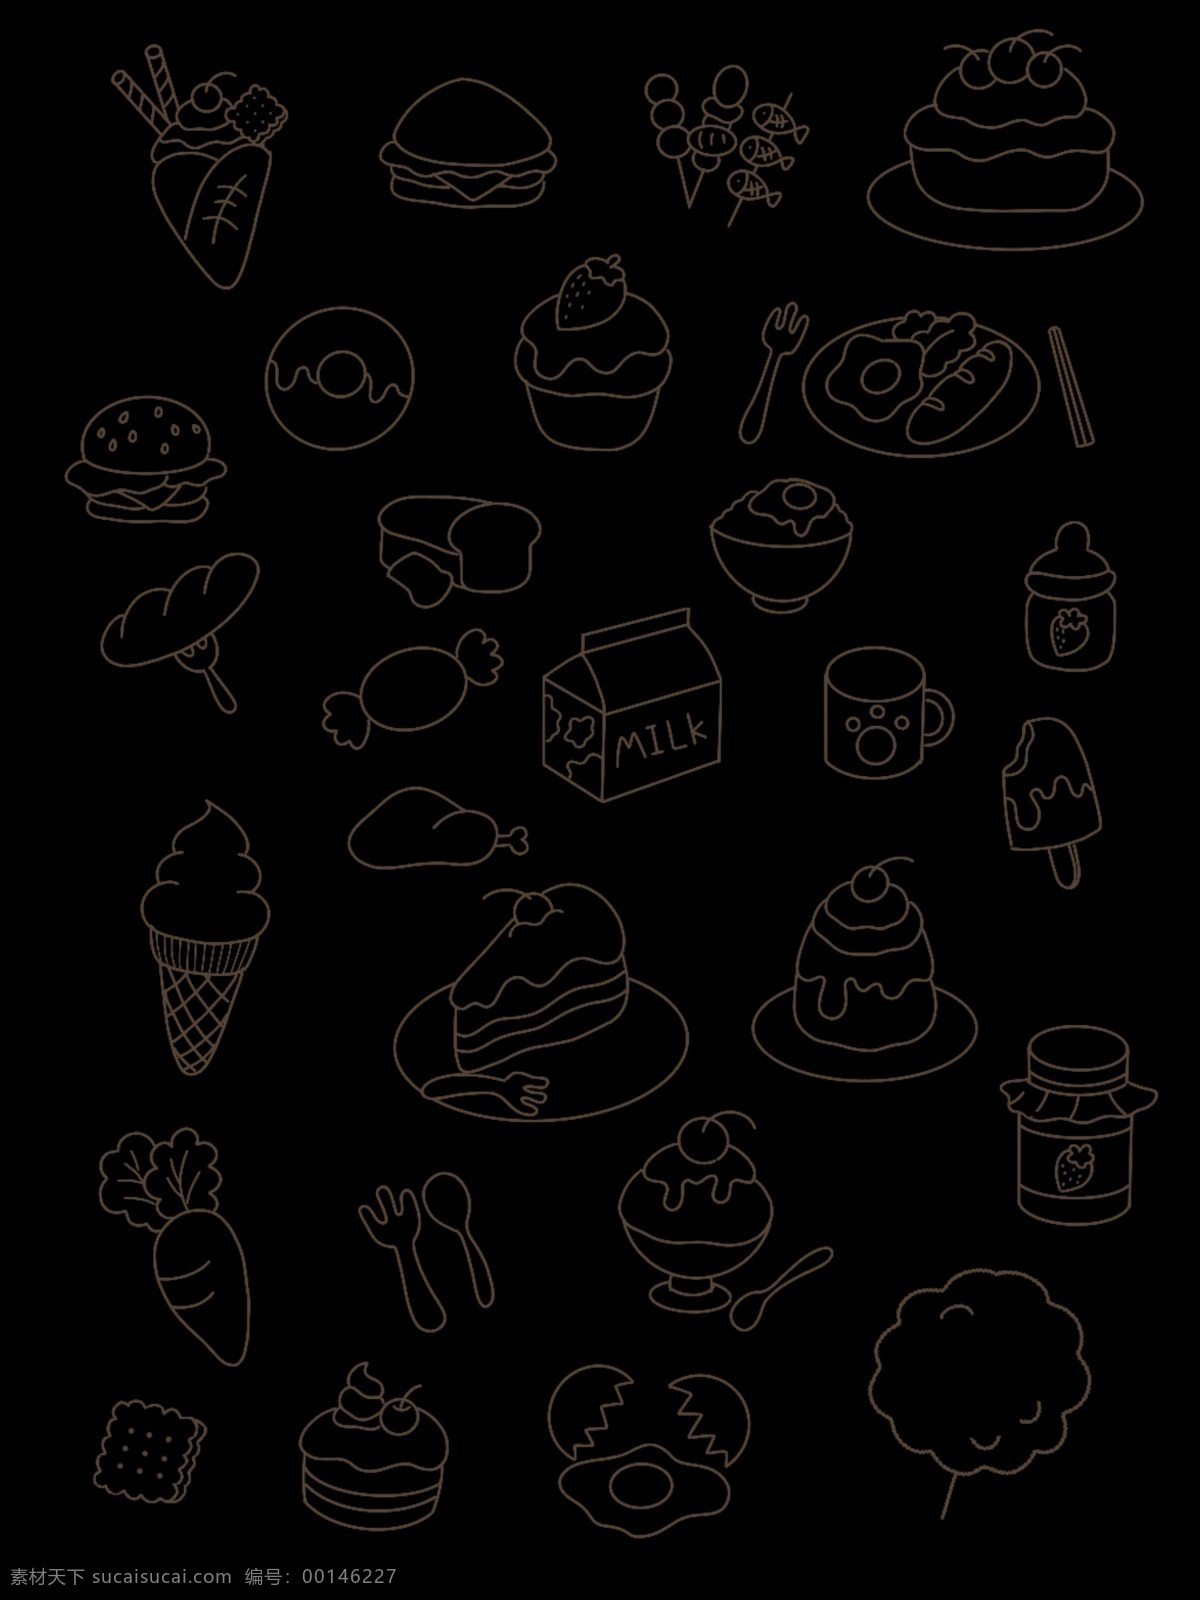 可爱 卡通 食物 小 包装袋设计 卡通手绘 零食 甜点 花纹 amp 背景 免 抠 图 底纹边框 其他素材